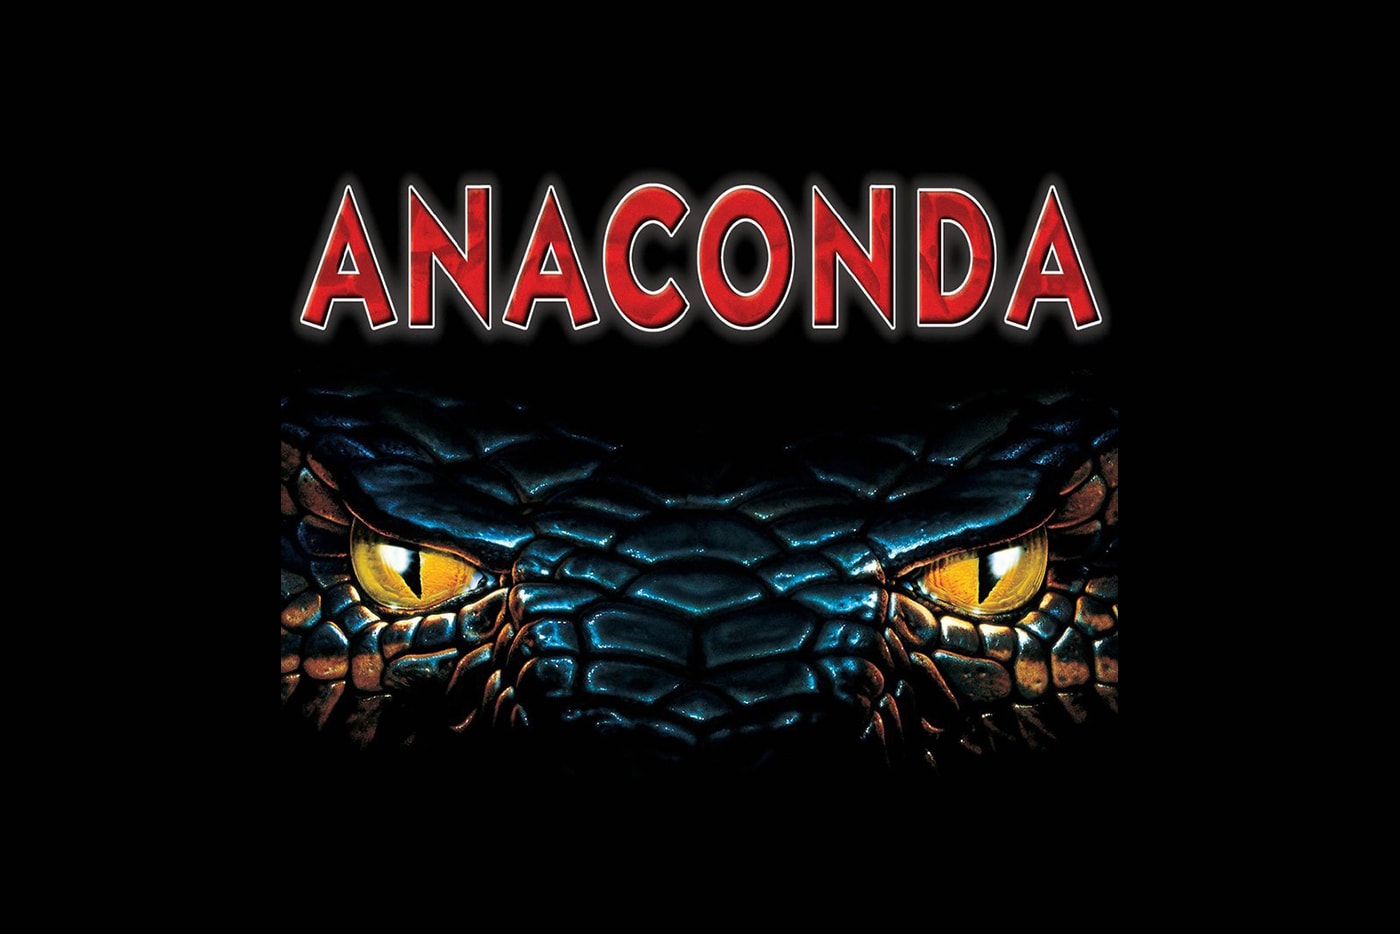 消息稱經典恐怖電影《Anaconda》正進行重啟製作